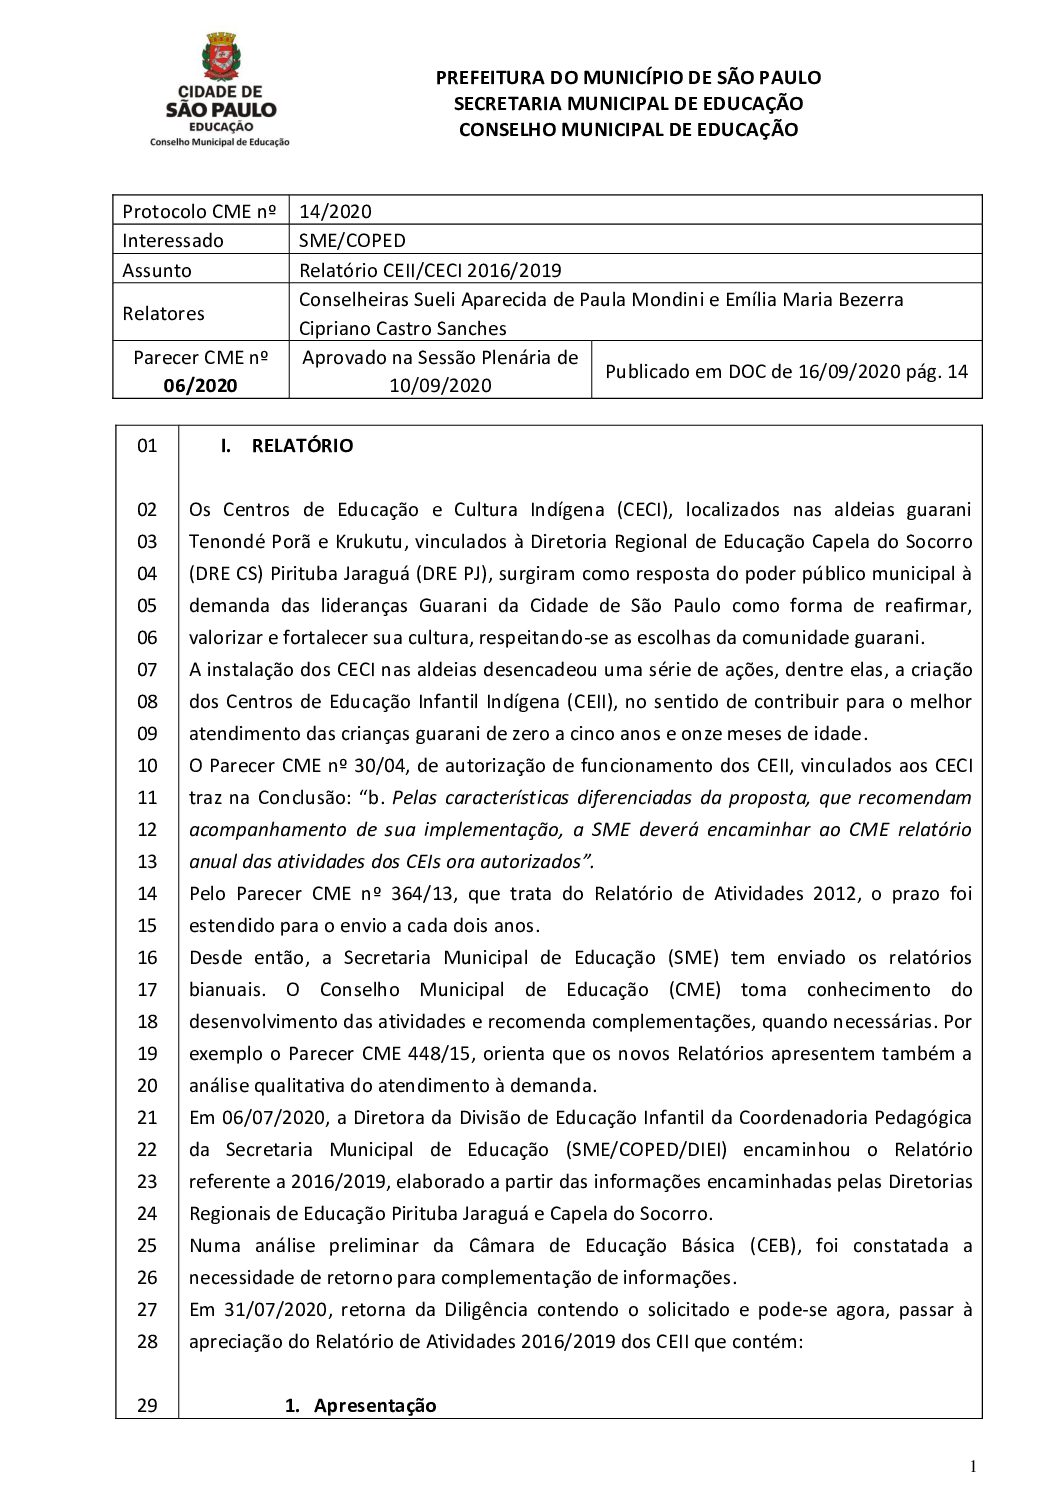 Parecer CME nº 06/2020 - Relatório CEII/CECI 2016/2019 